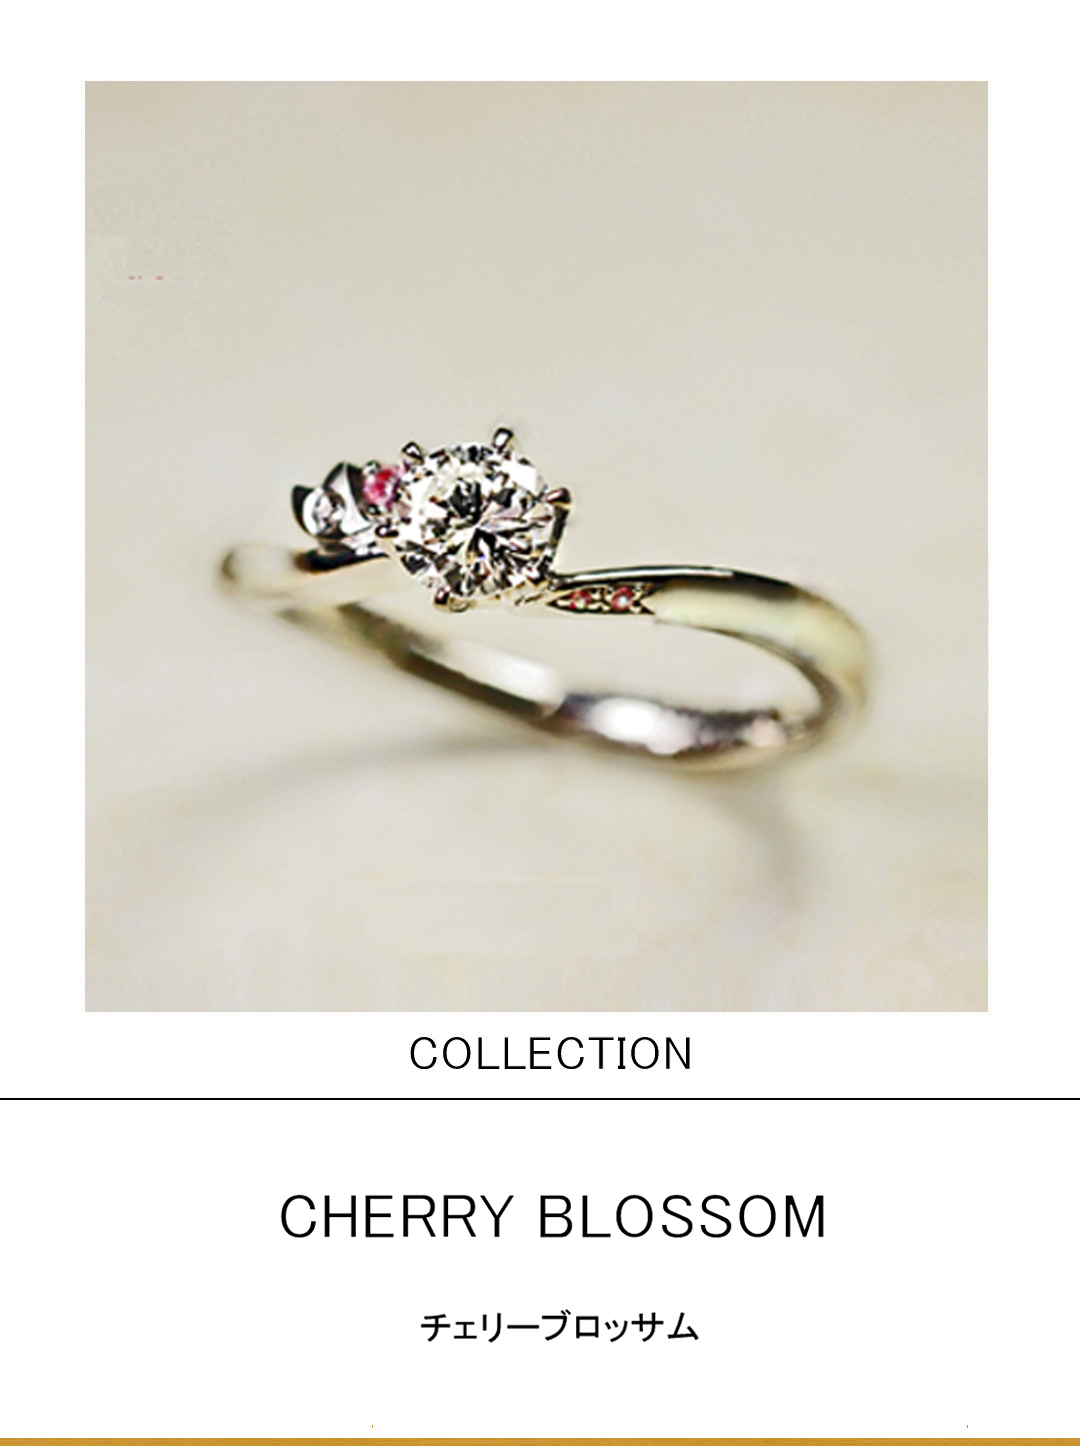 ピンクダイヤをサクラのデザインに留めた婚約指輪コレクションのサムネイル